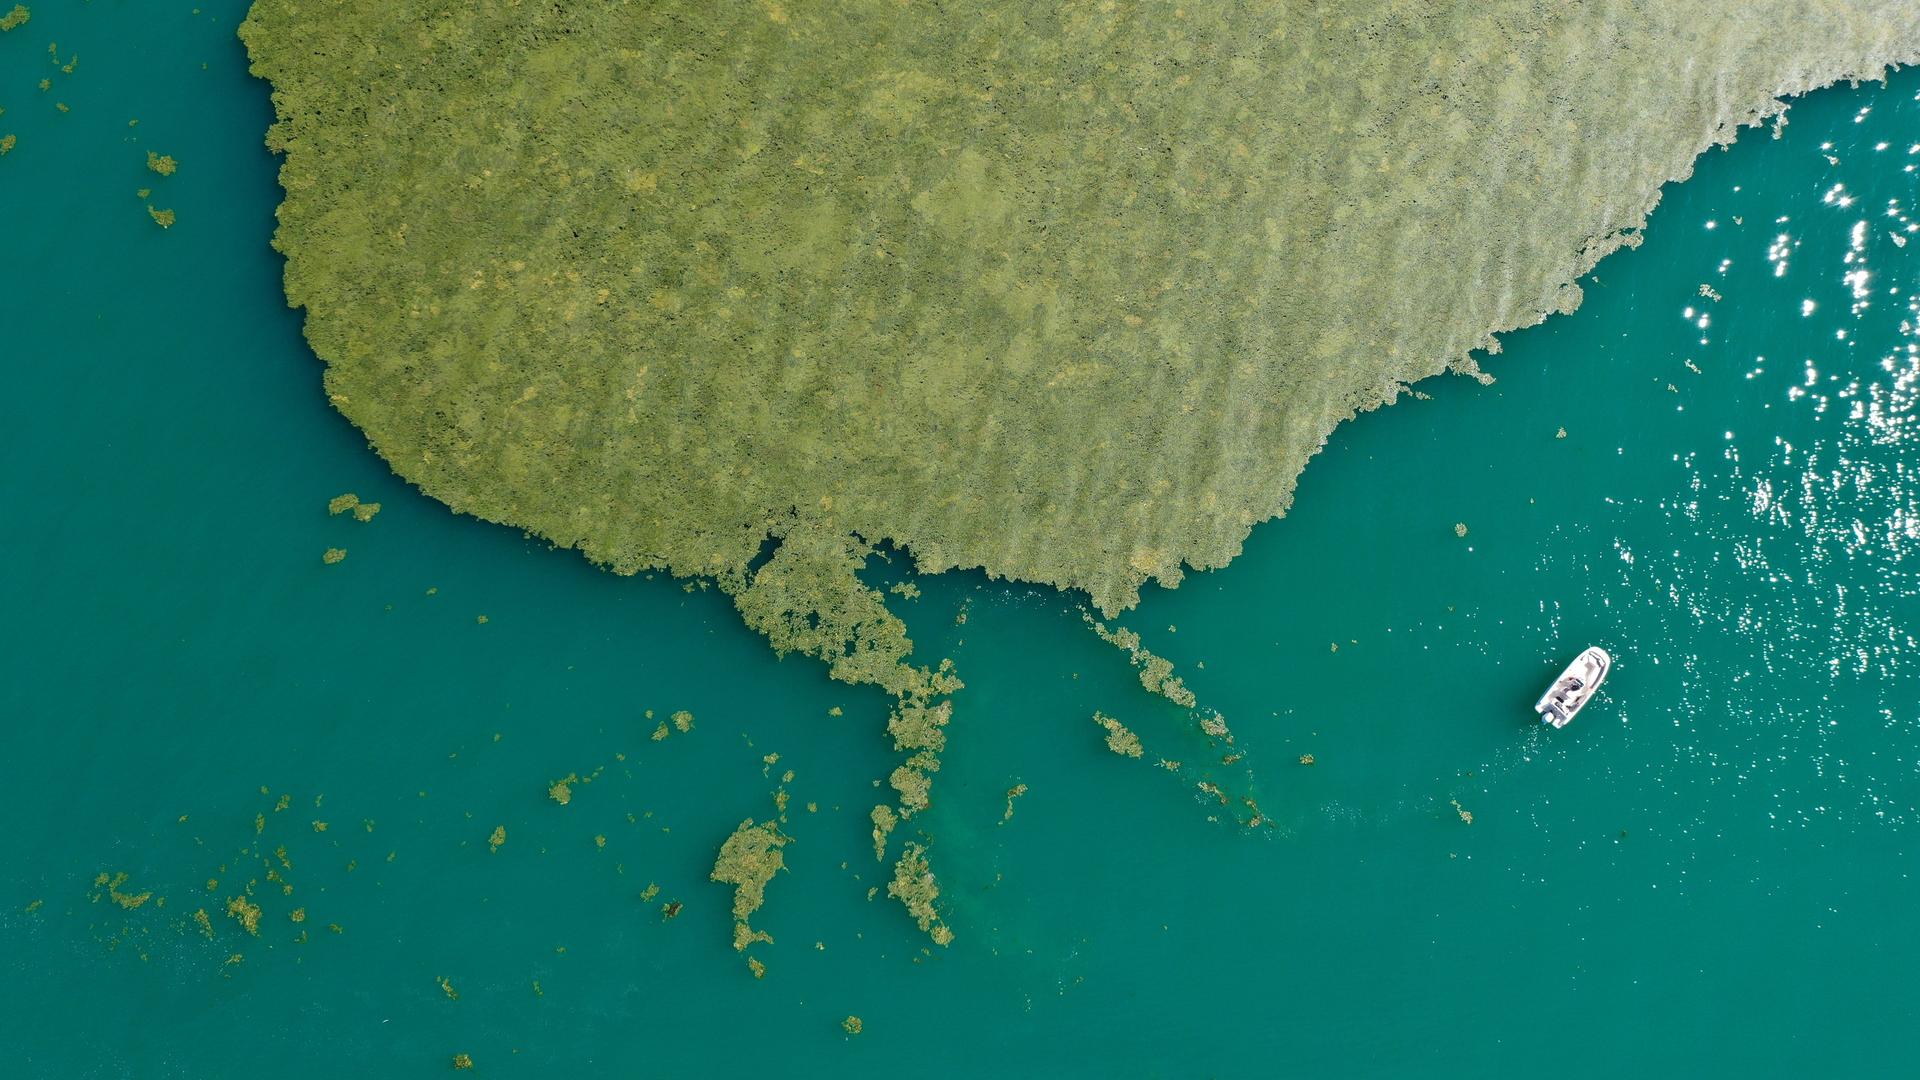 Luftaufnahme von der Oberfläche des Bodensees, in dem ein großer grüner Algenteppich schwimmt.